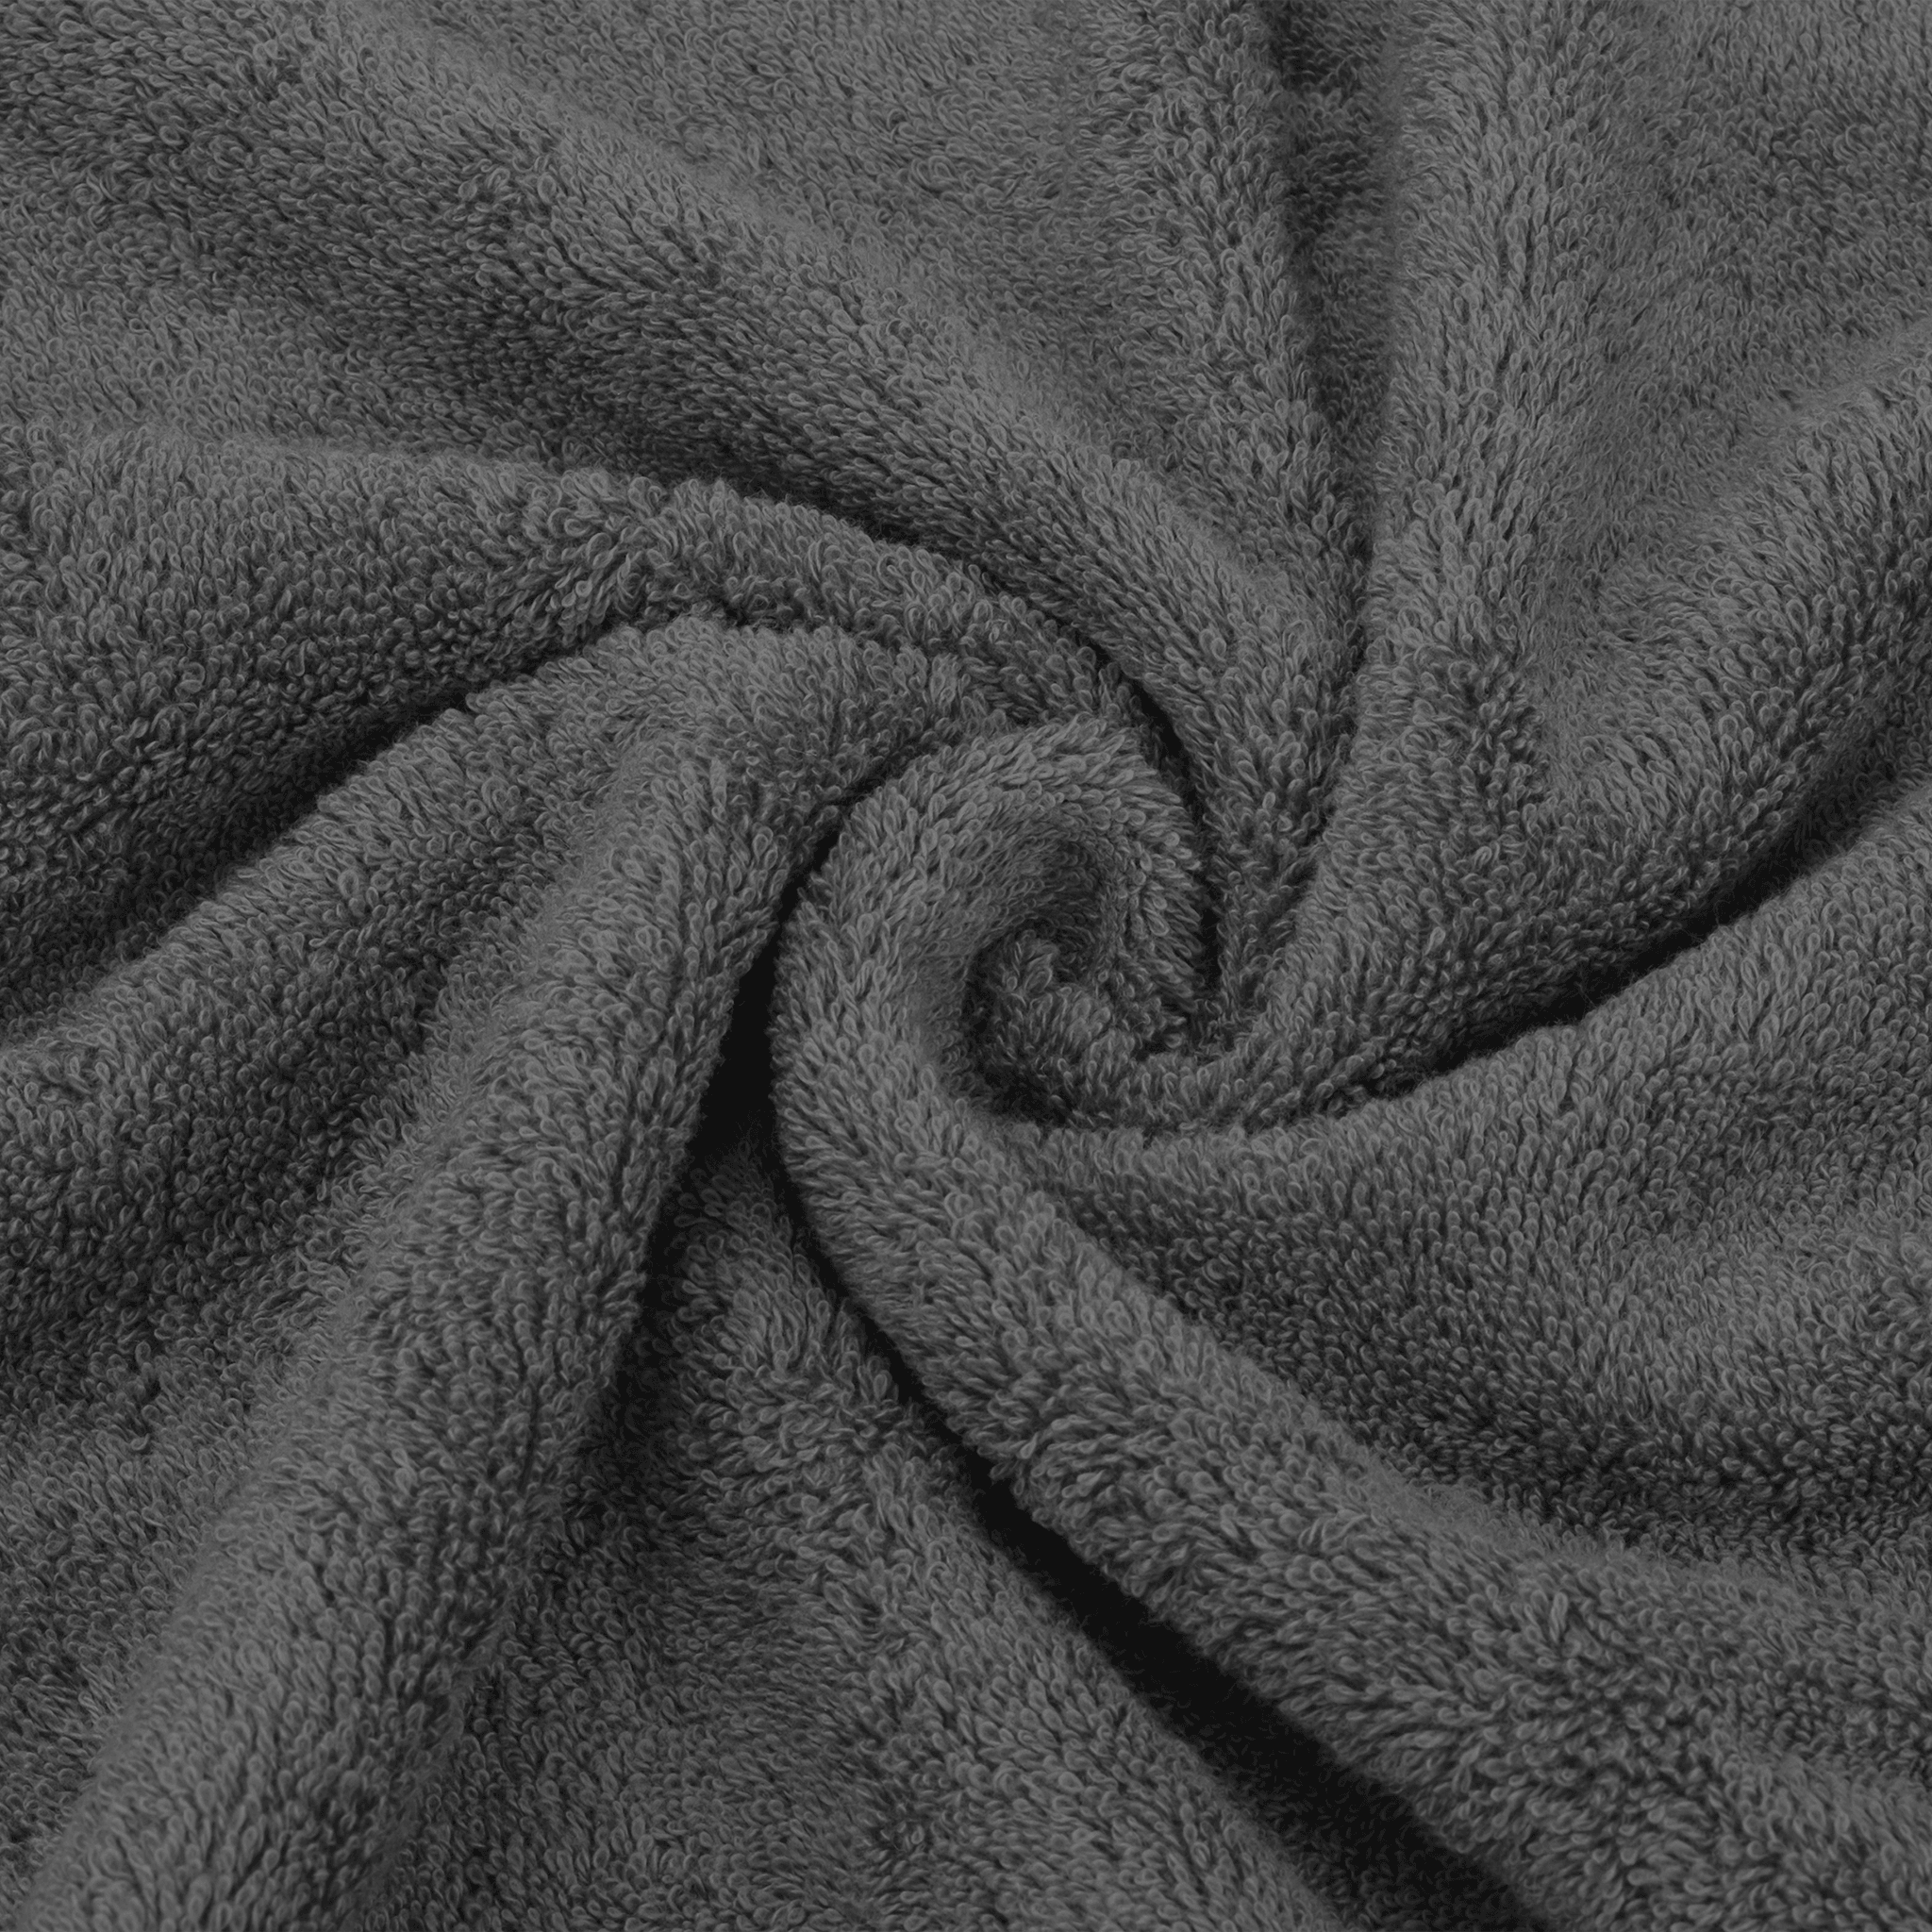 Dark Grey Stripe Linen Hand Towels (Set of 2) – Saffron + Poe